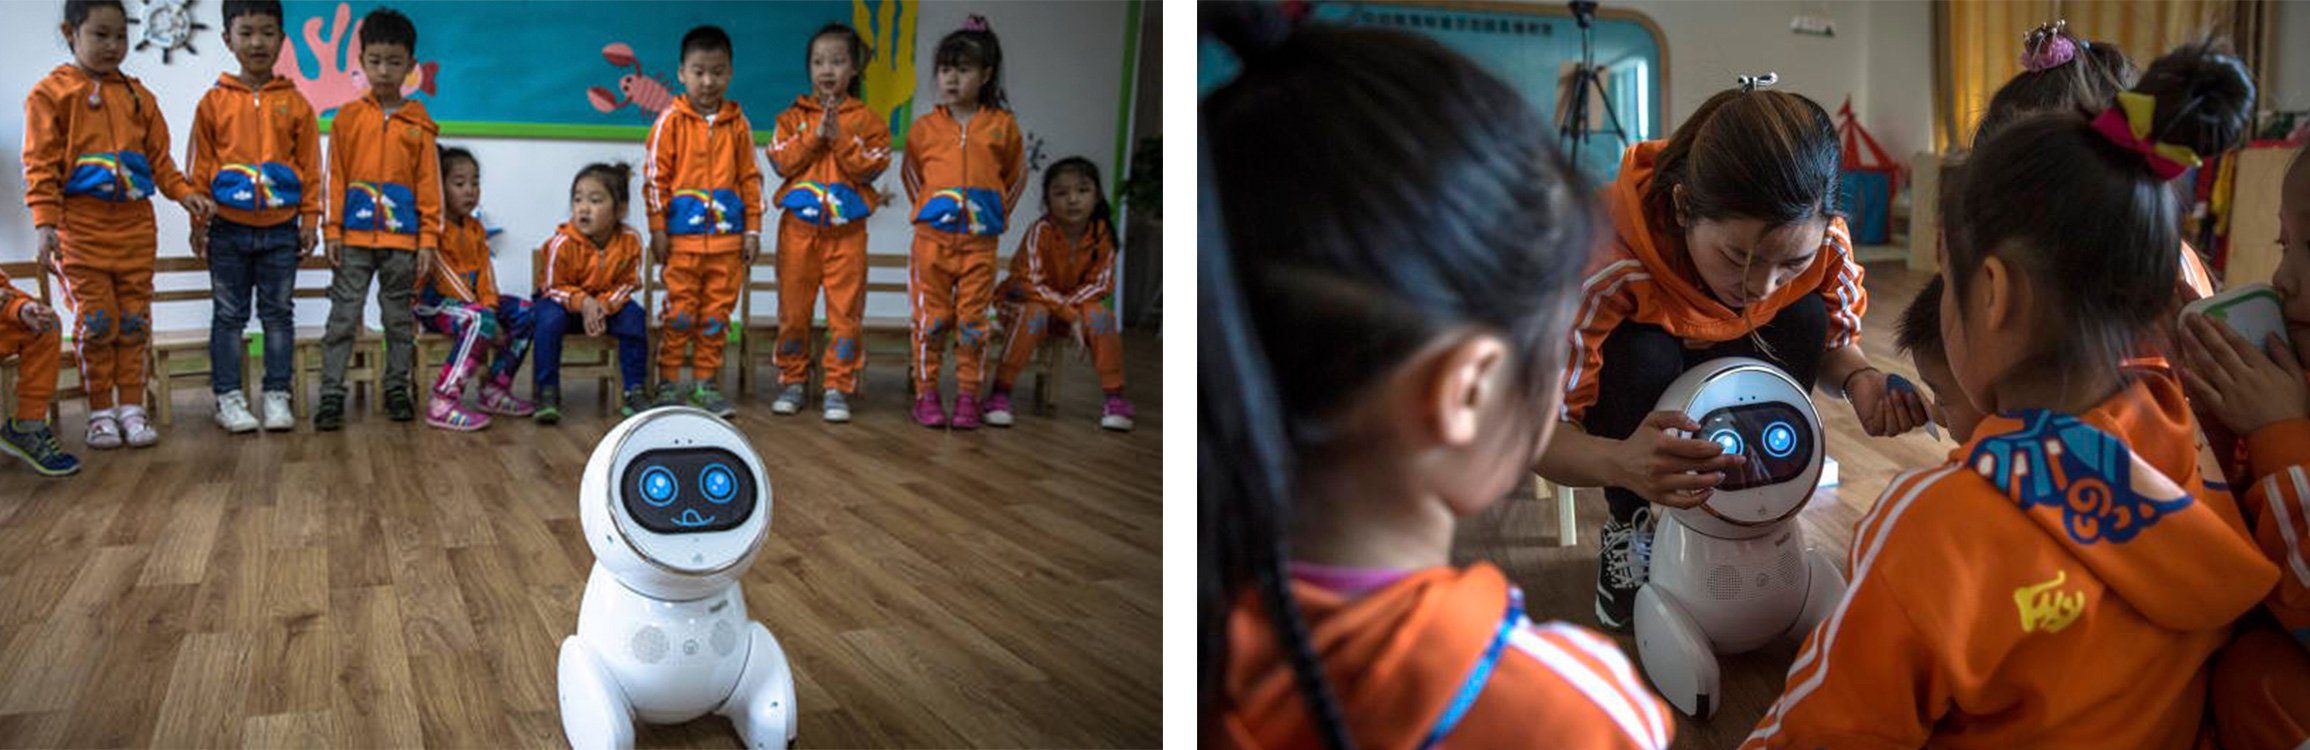 Роботы в китайской школе